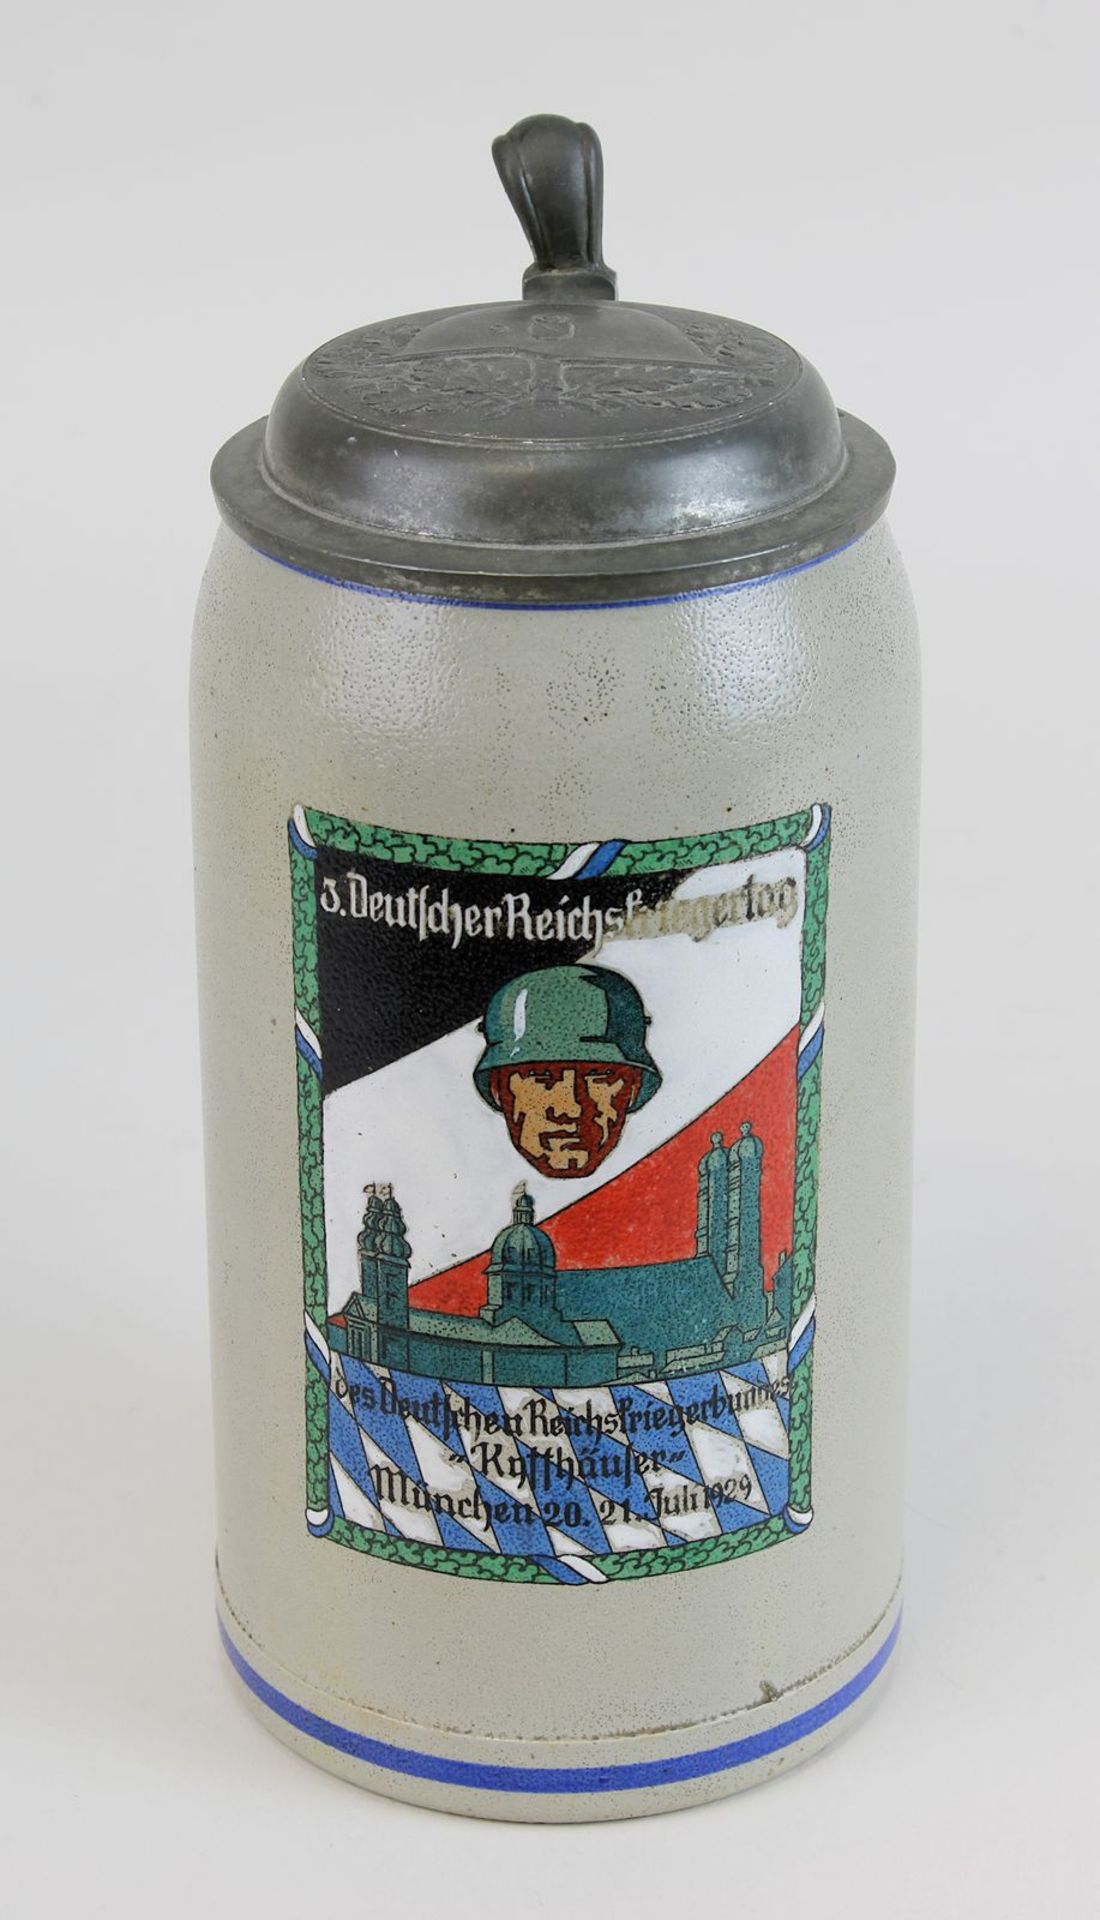 Bierkrug des Deutschen Reichskriegerbundes Kyffhäuser, München 1929, Keramik, grauer Scherben,